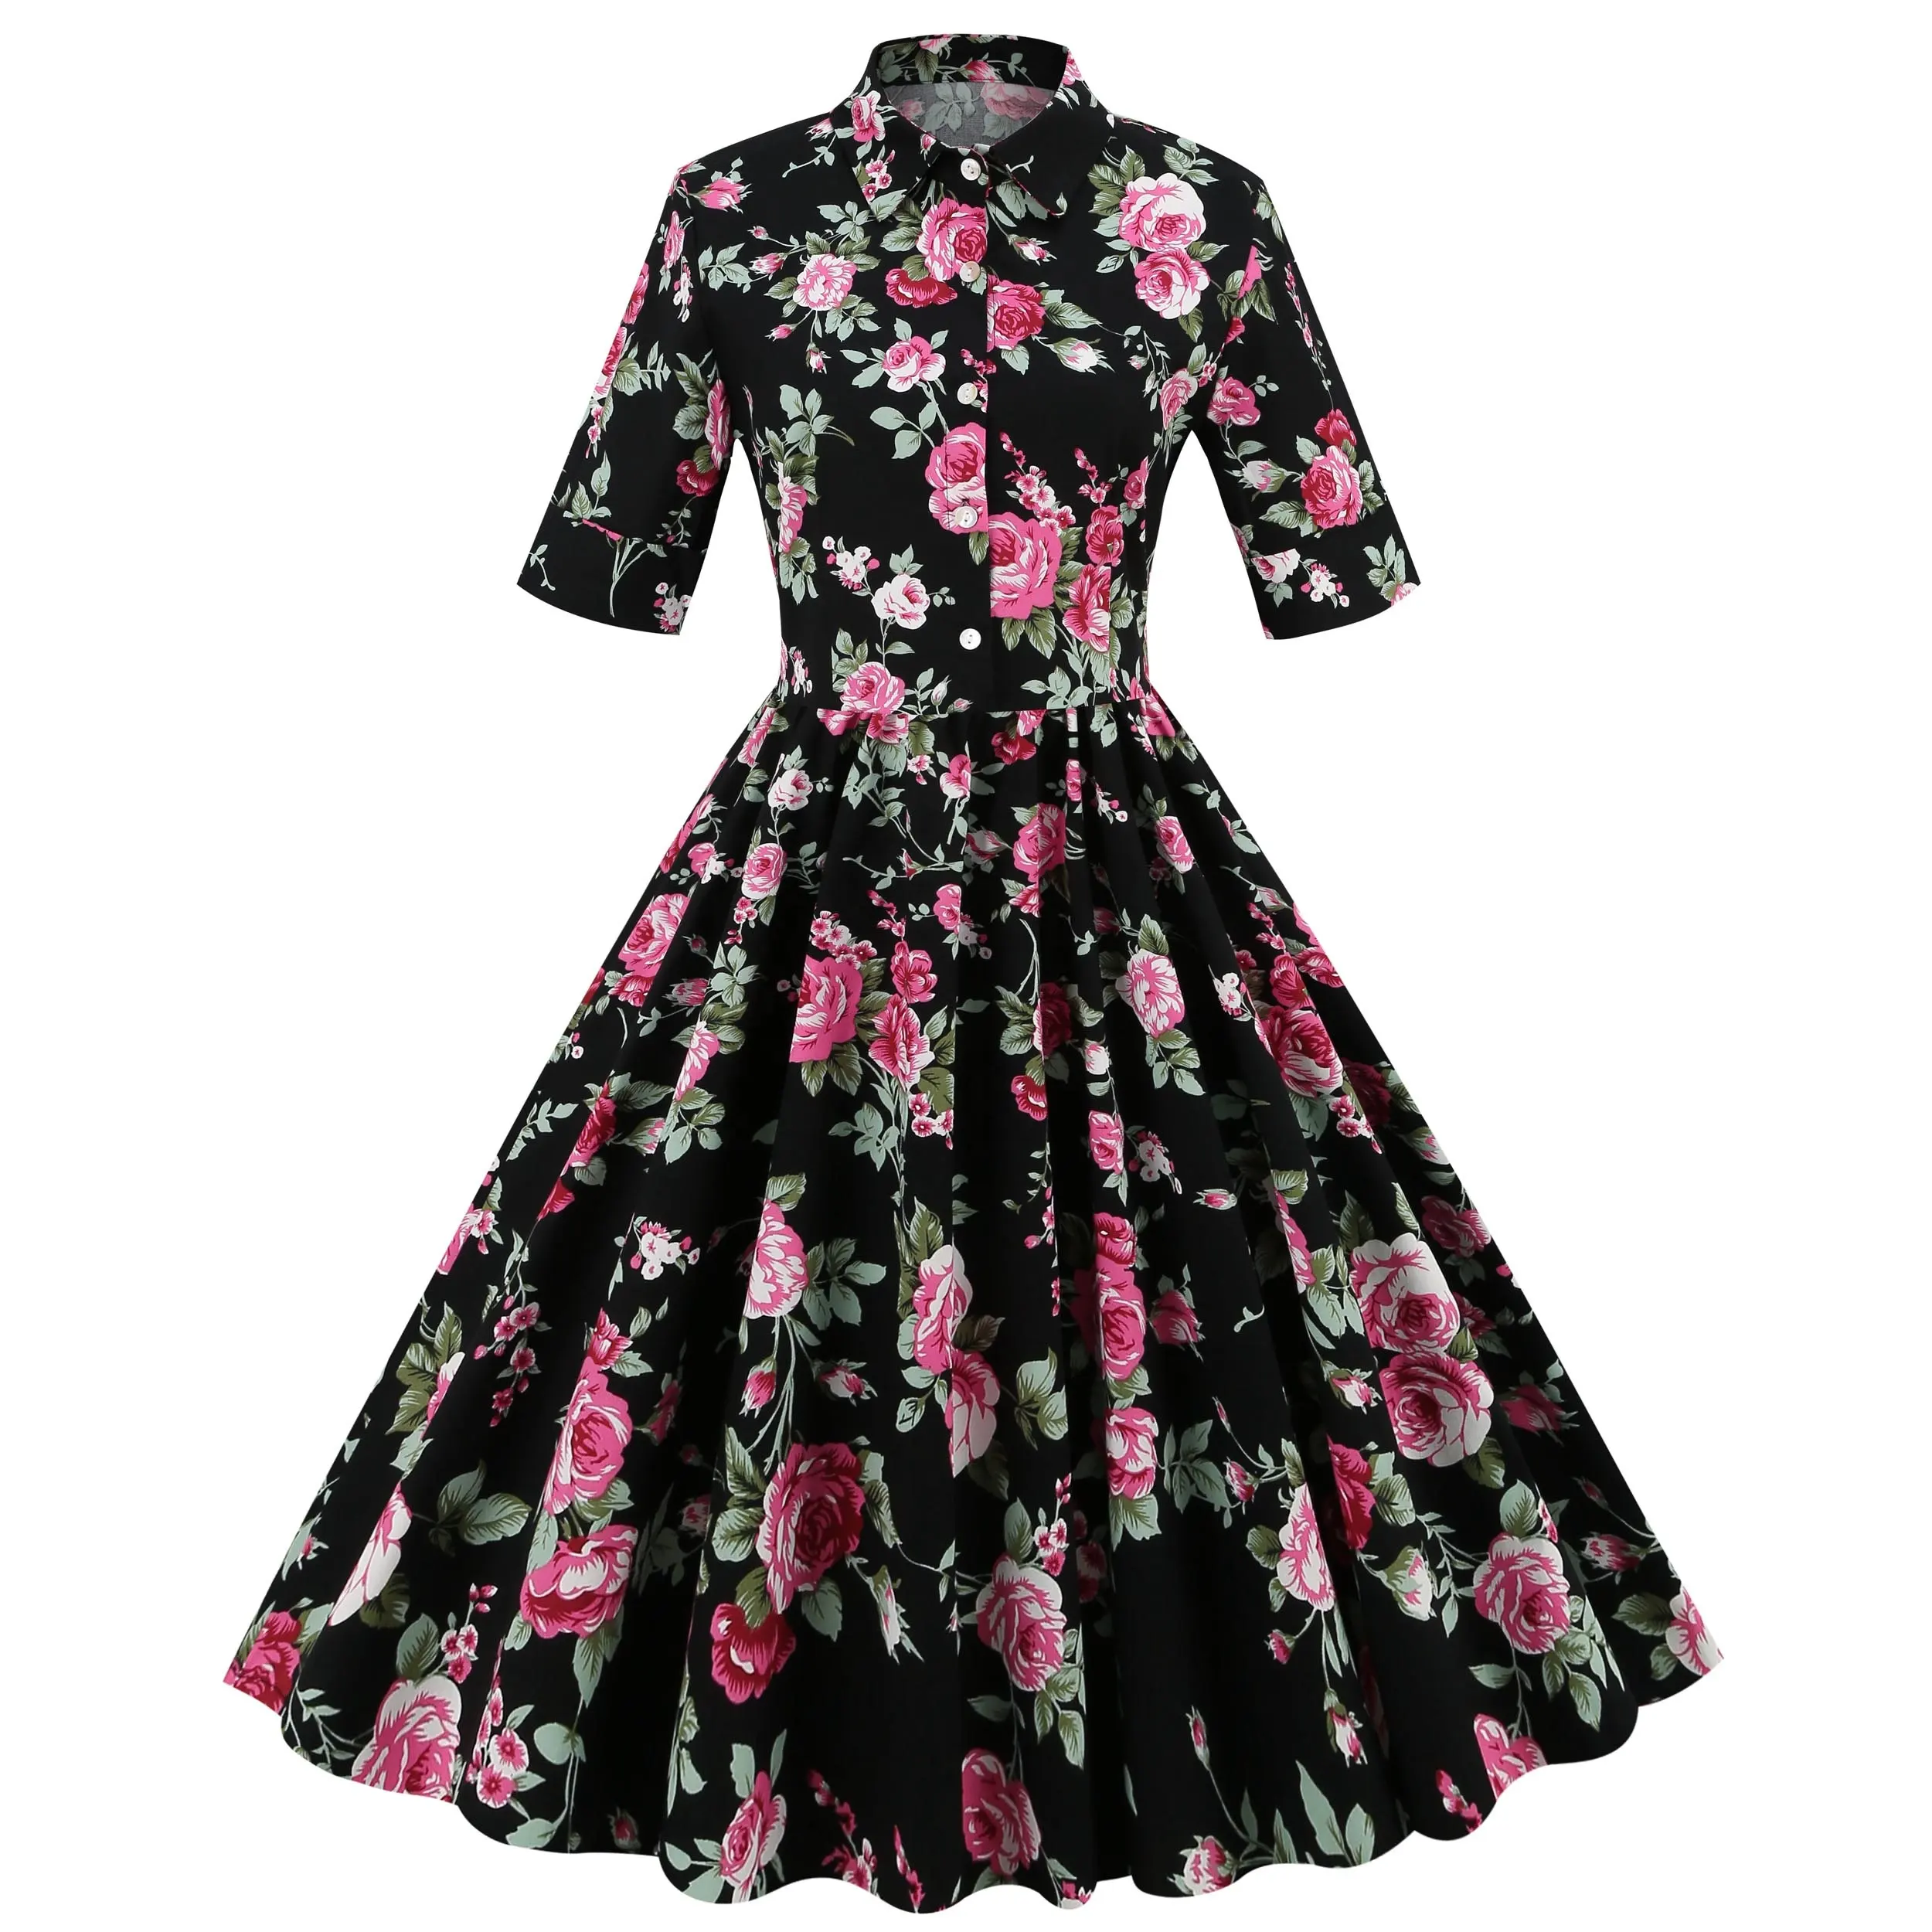 OSGL-1629 ladies floral print short sleeves vintage dresses knee long turn down collar women casual dress